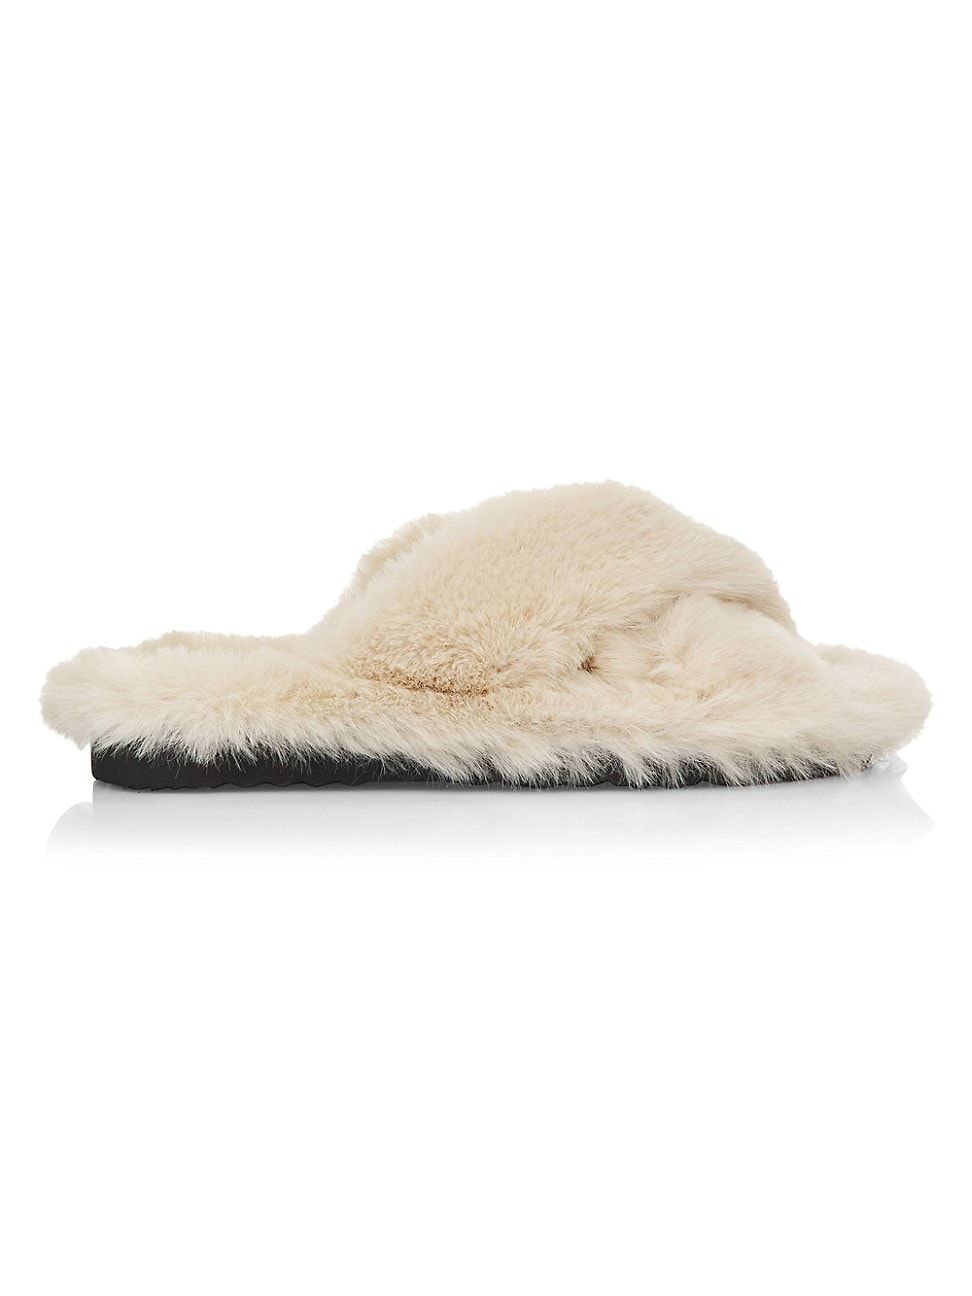 Women's Biba Faux Fur Slippers - Latte - Size 8 - Latte - Size 8 | Saks Fifth Avenue